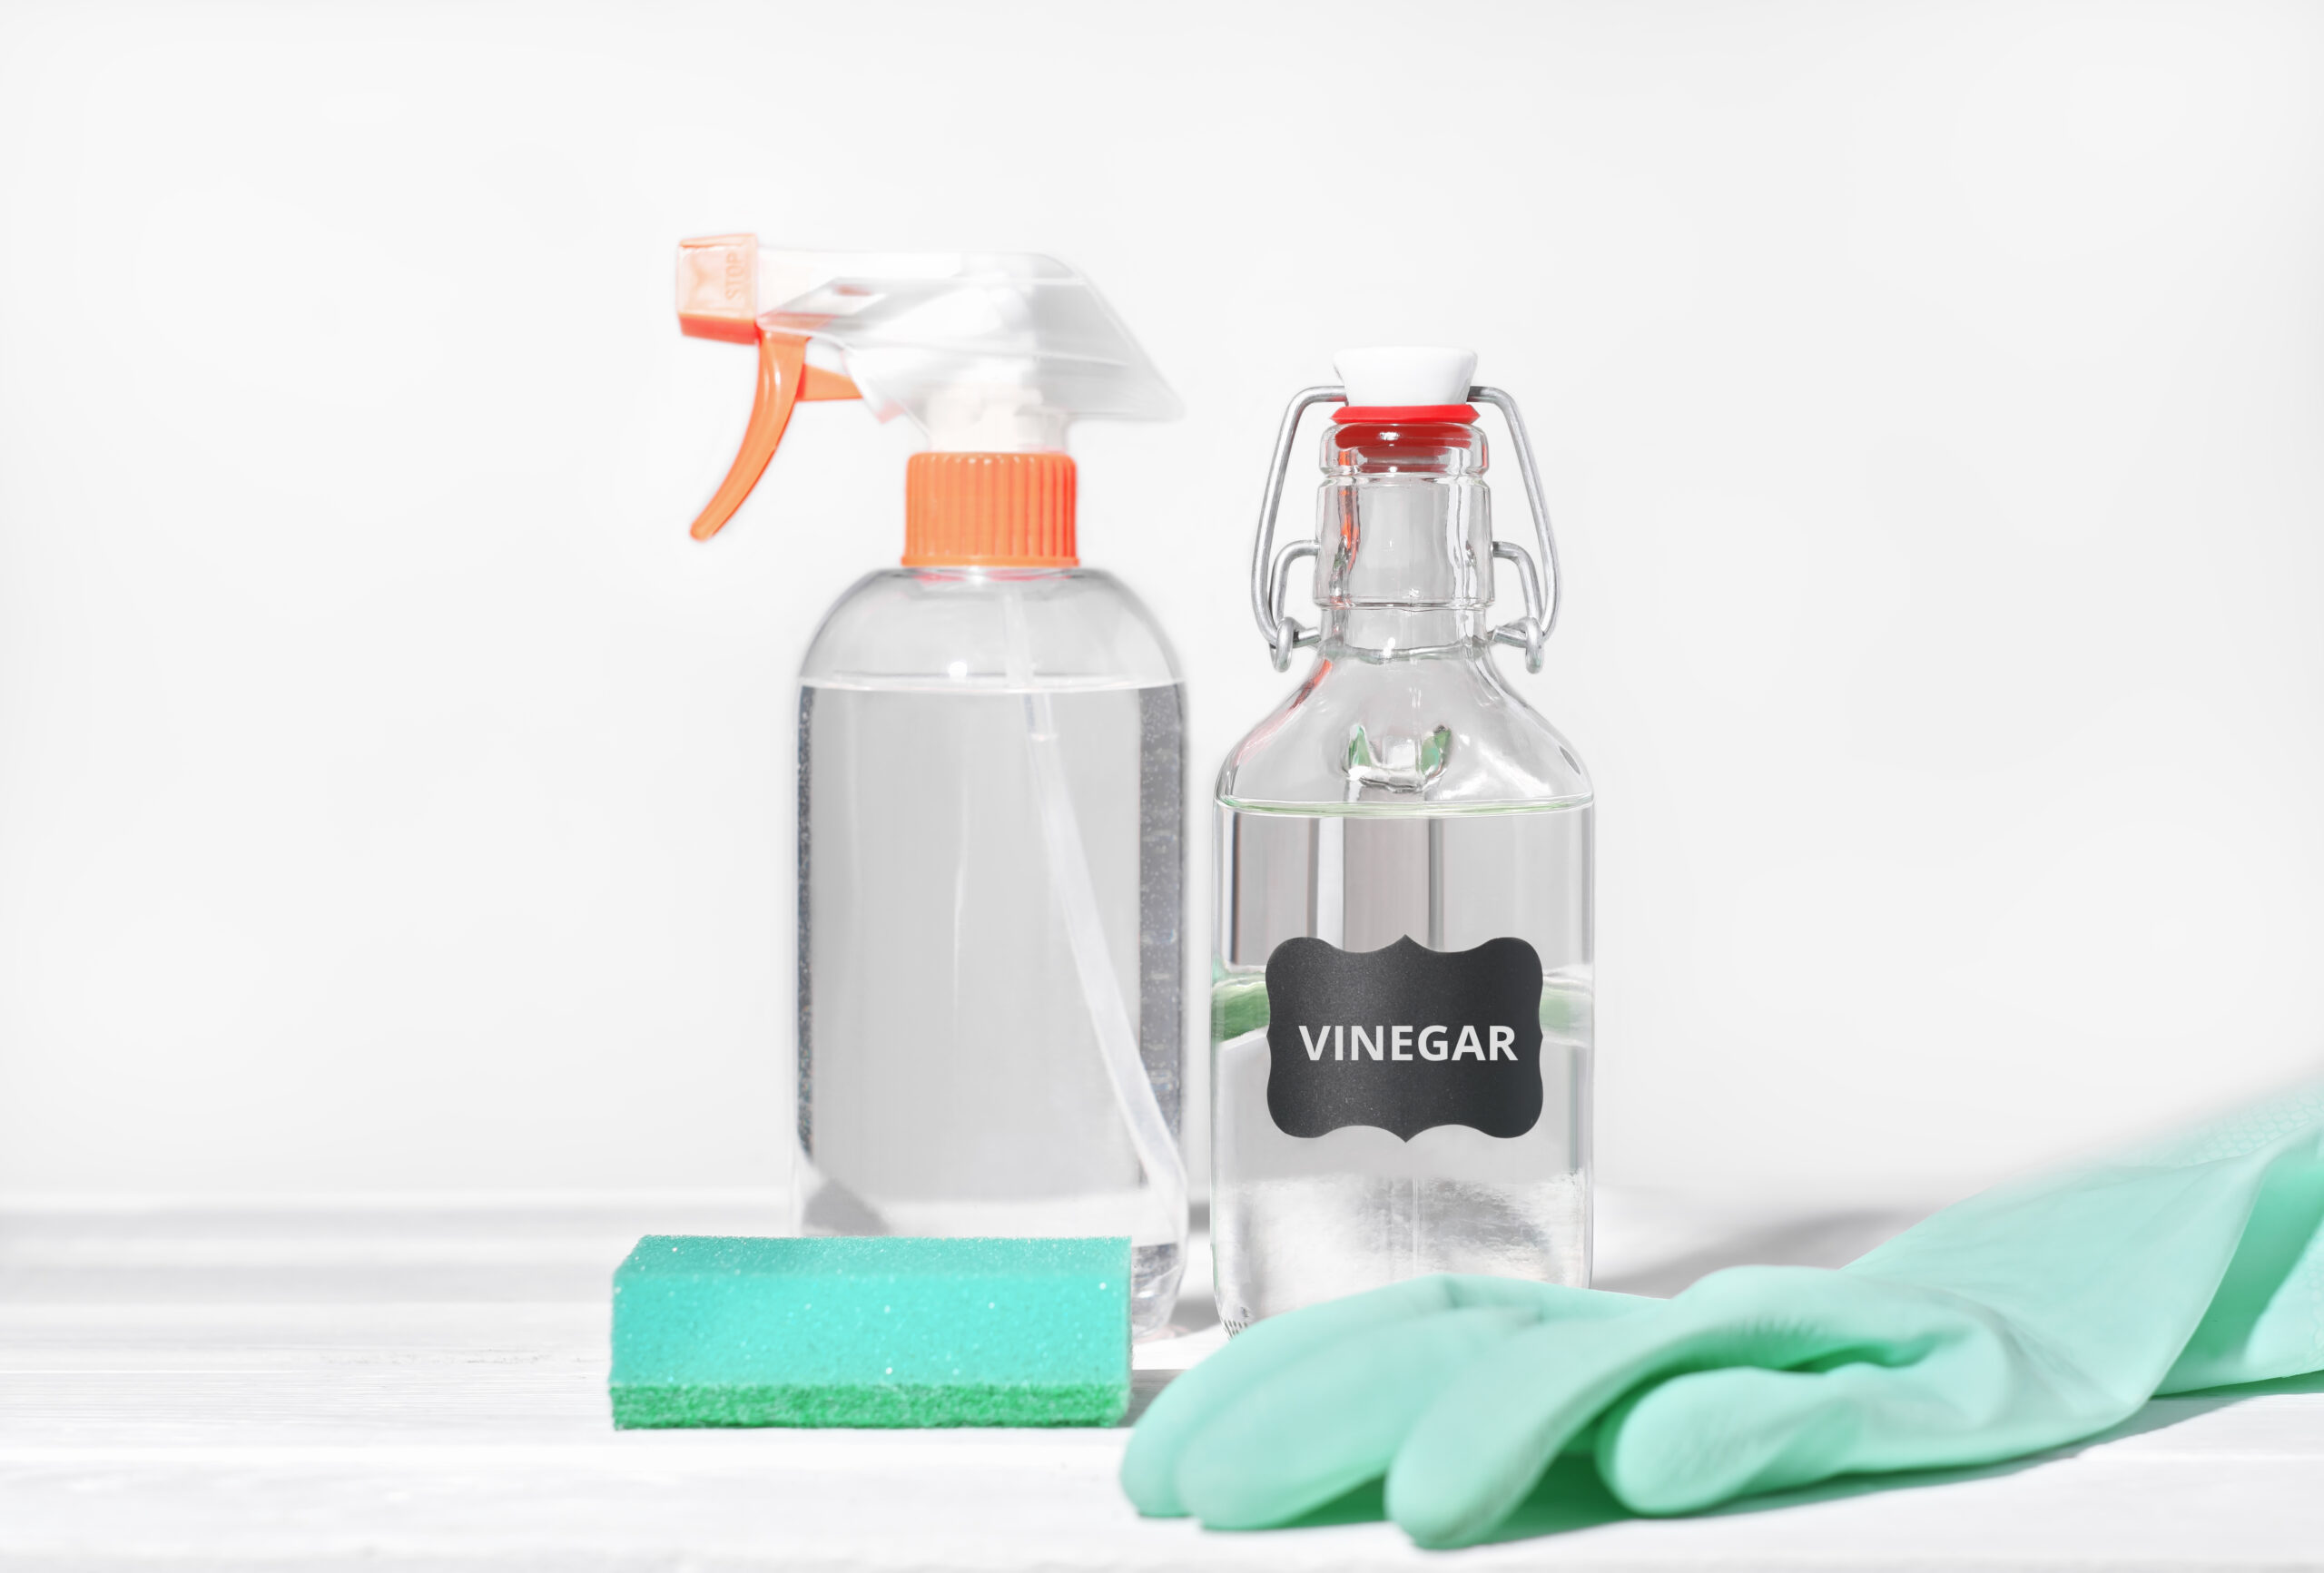 white vinegar or vinegar cleansing